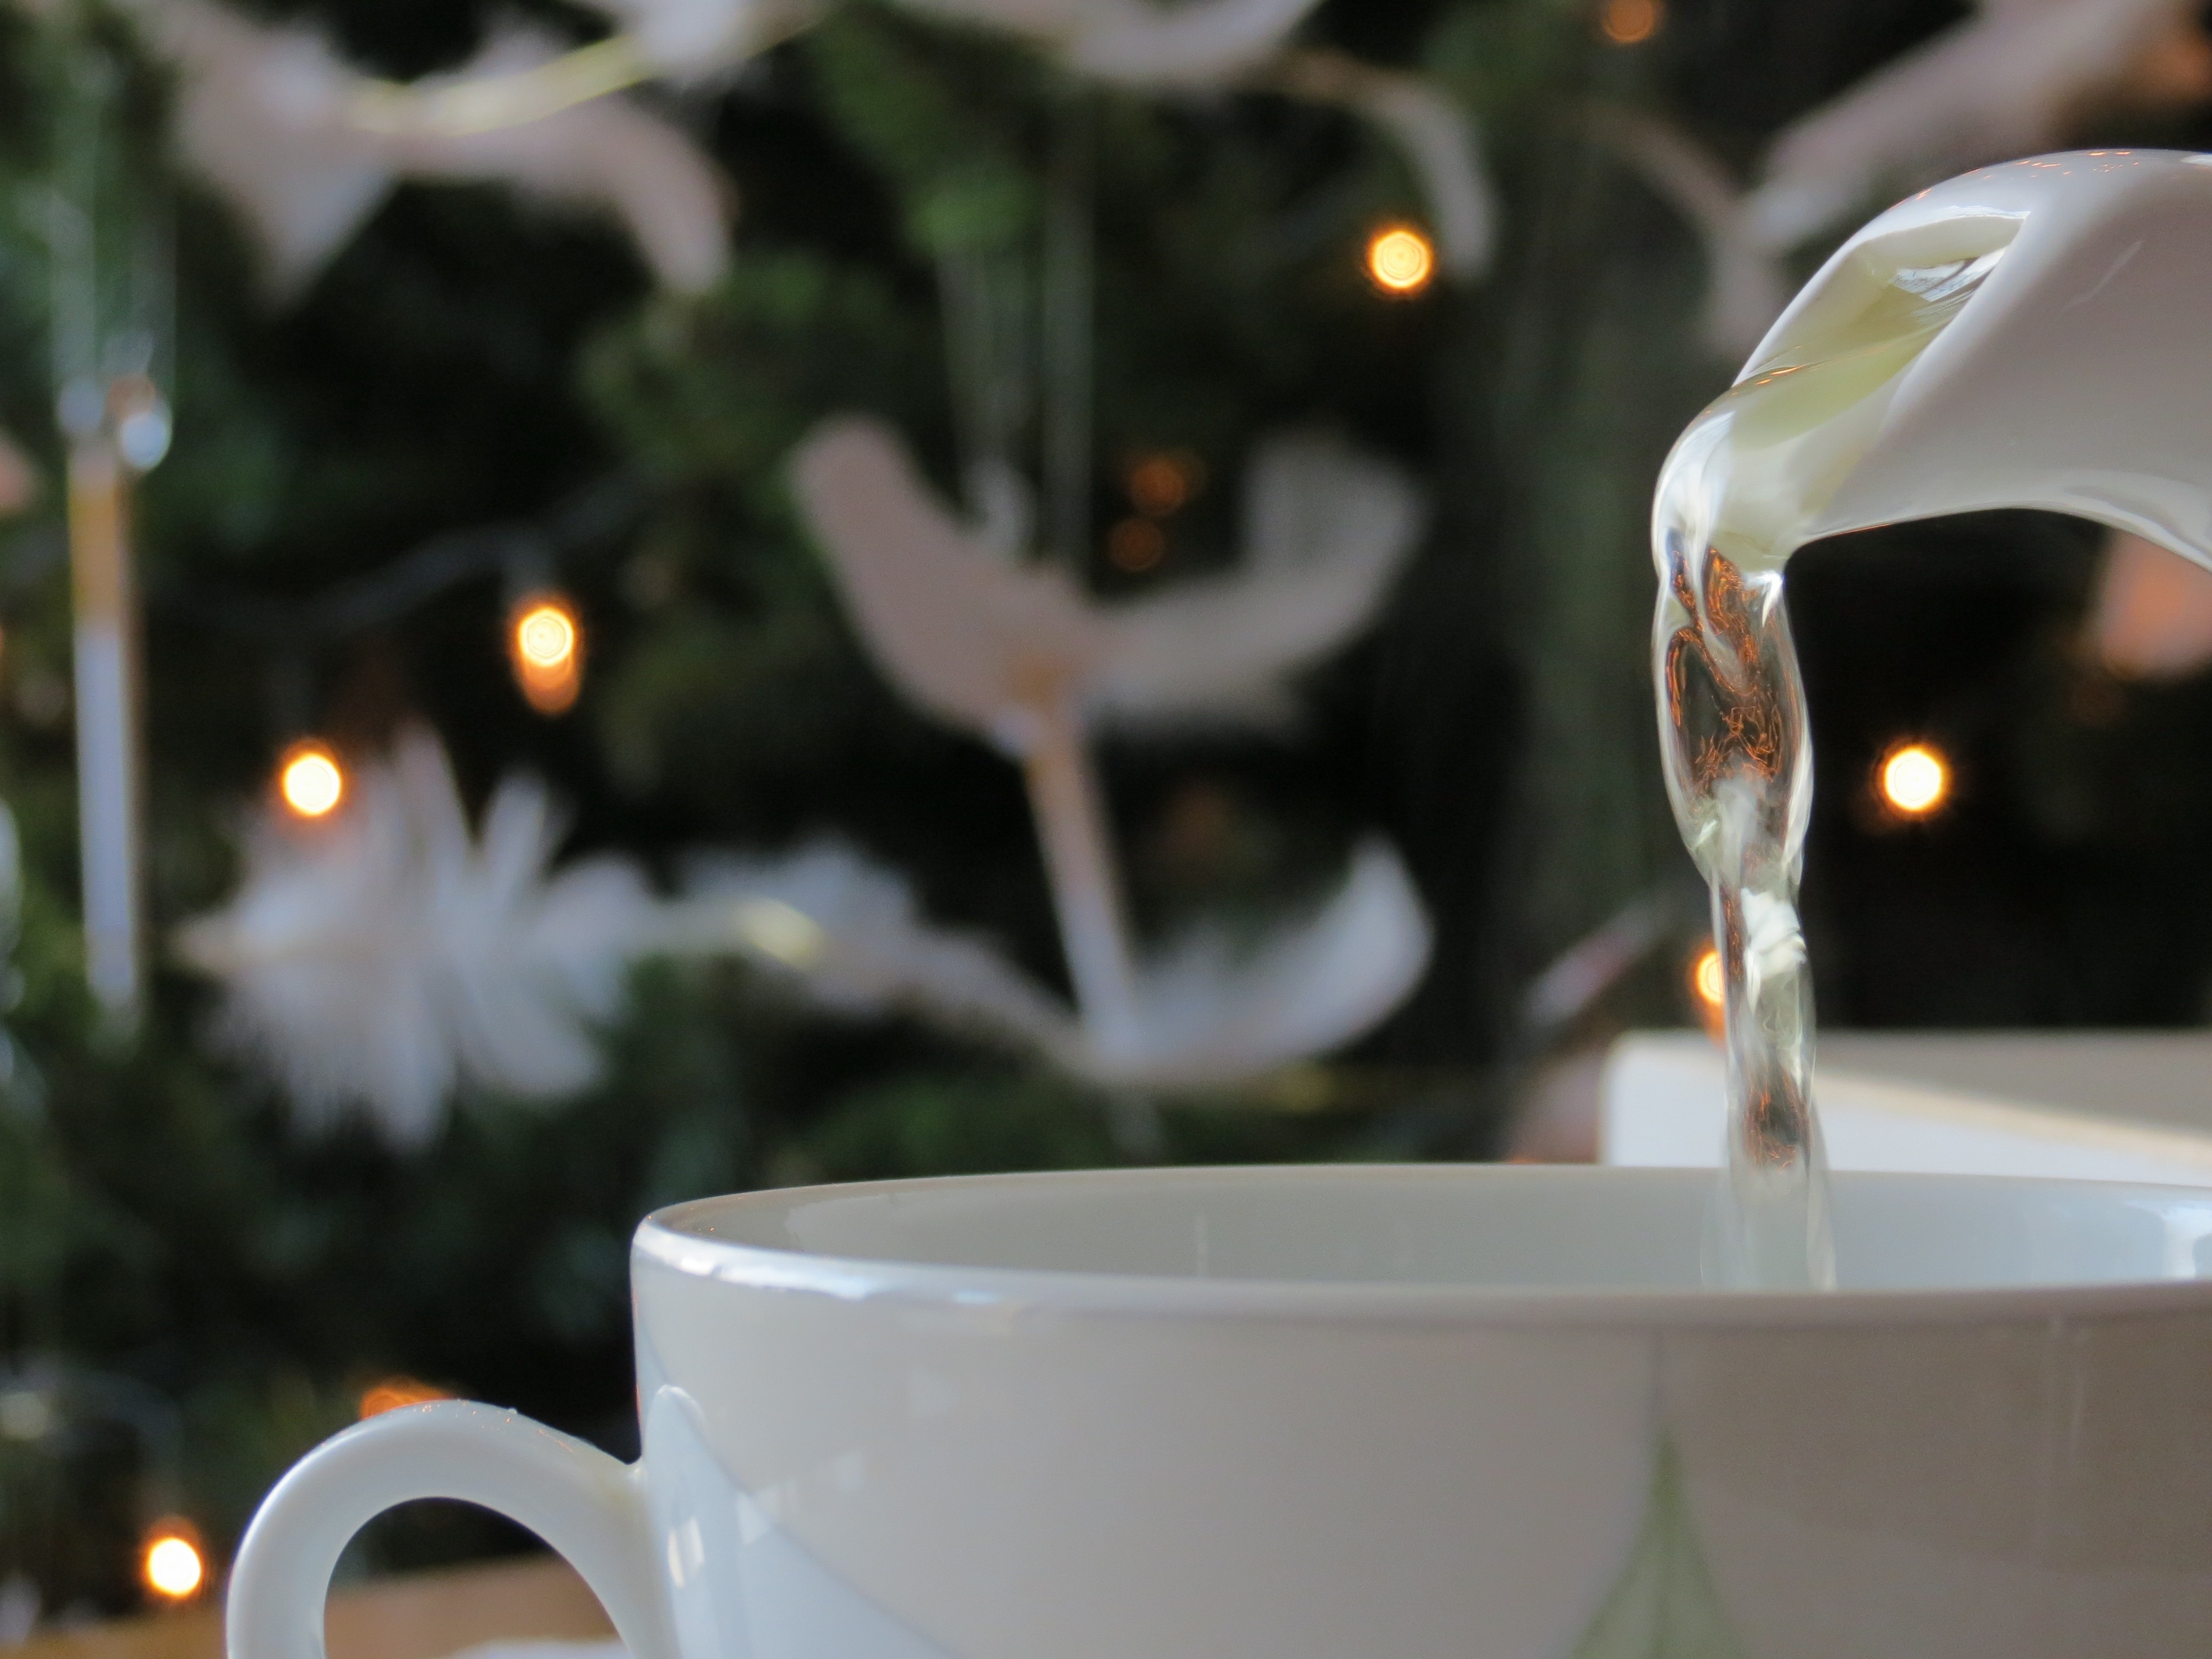 Tea, Christmas Tree, Mug, Holidays, drink, food and drink